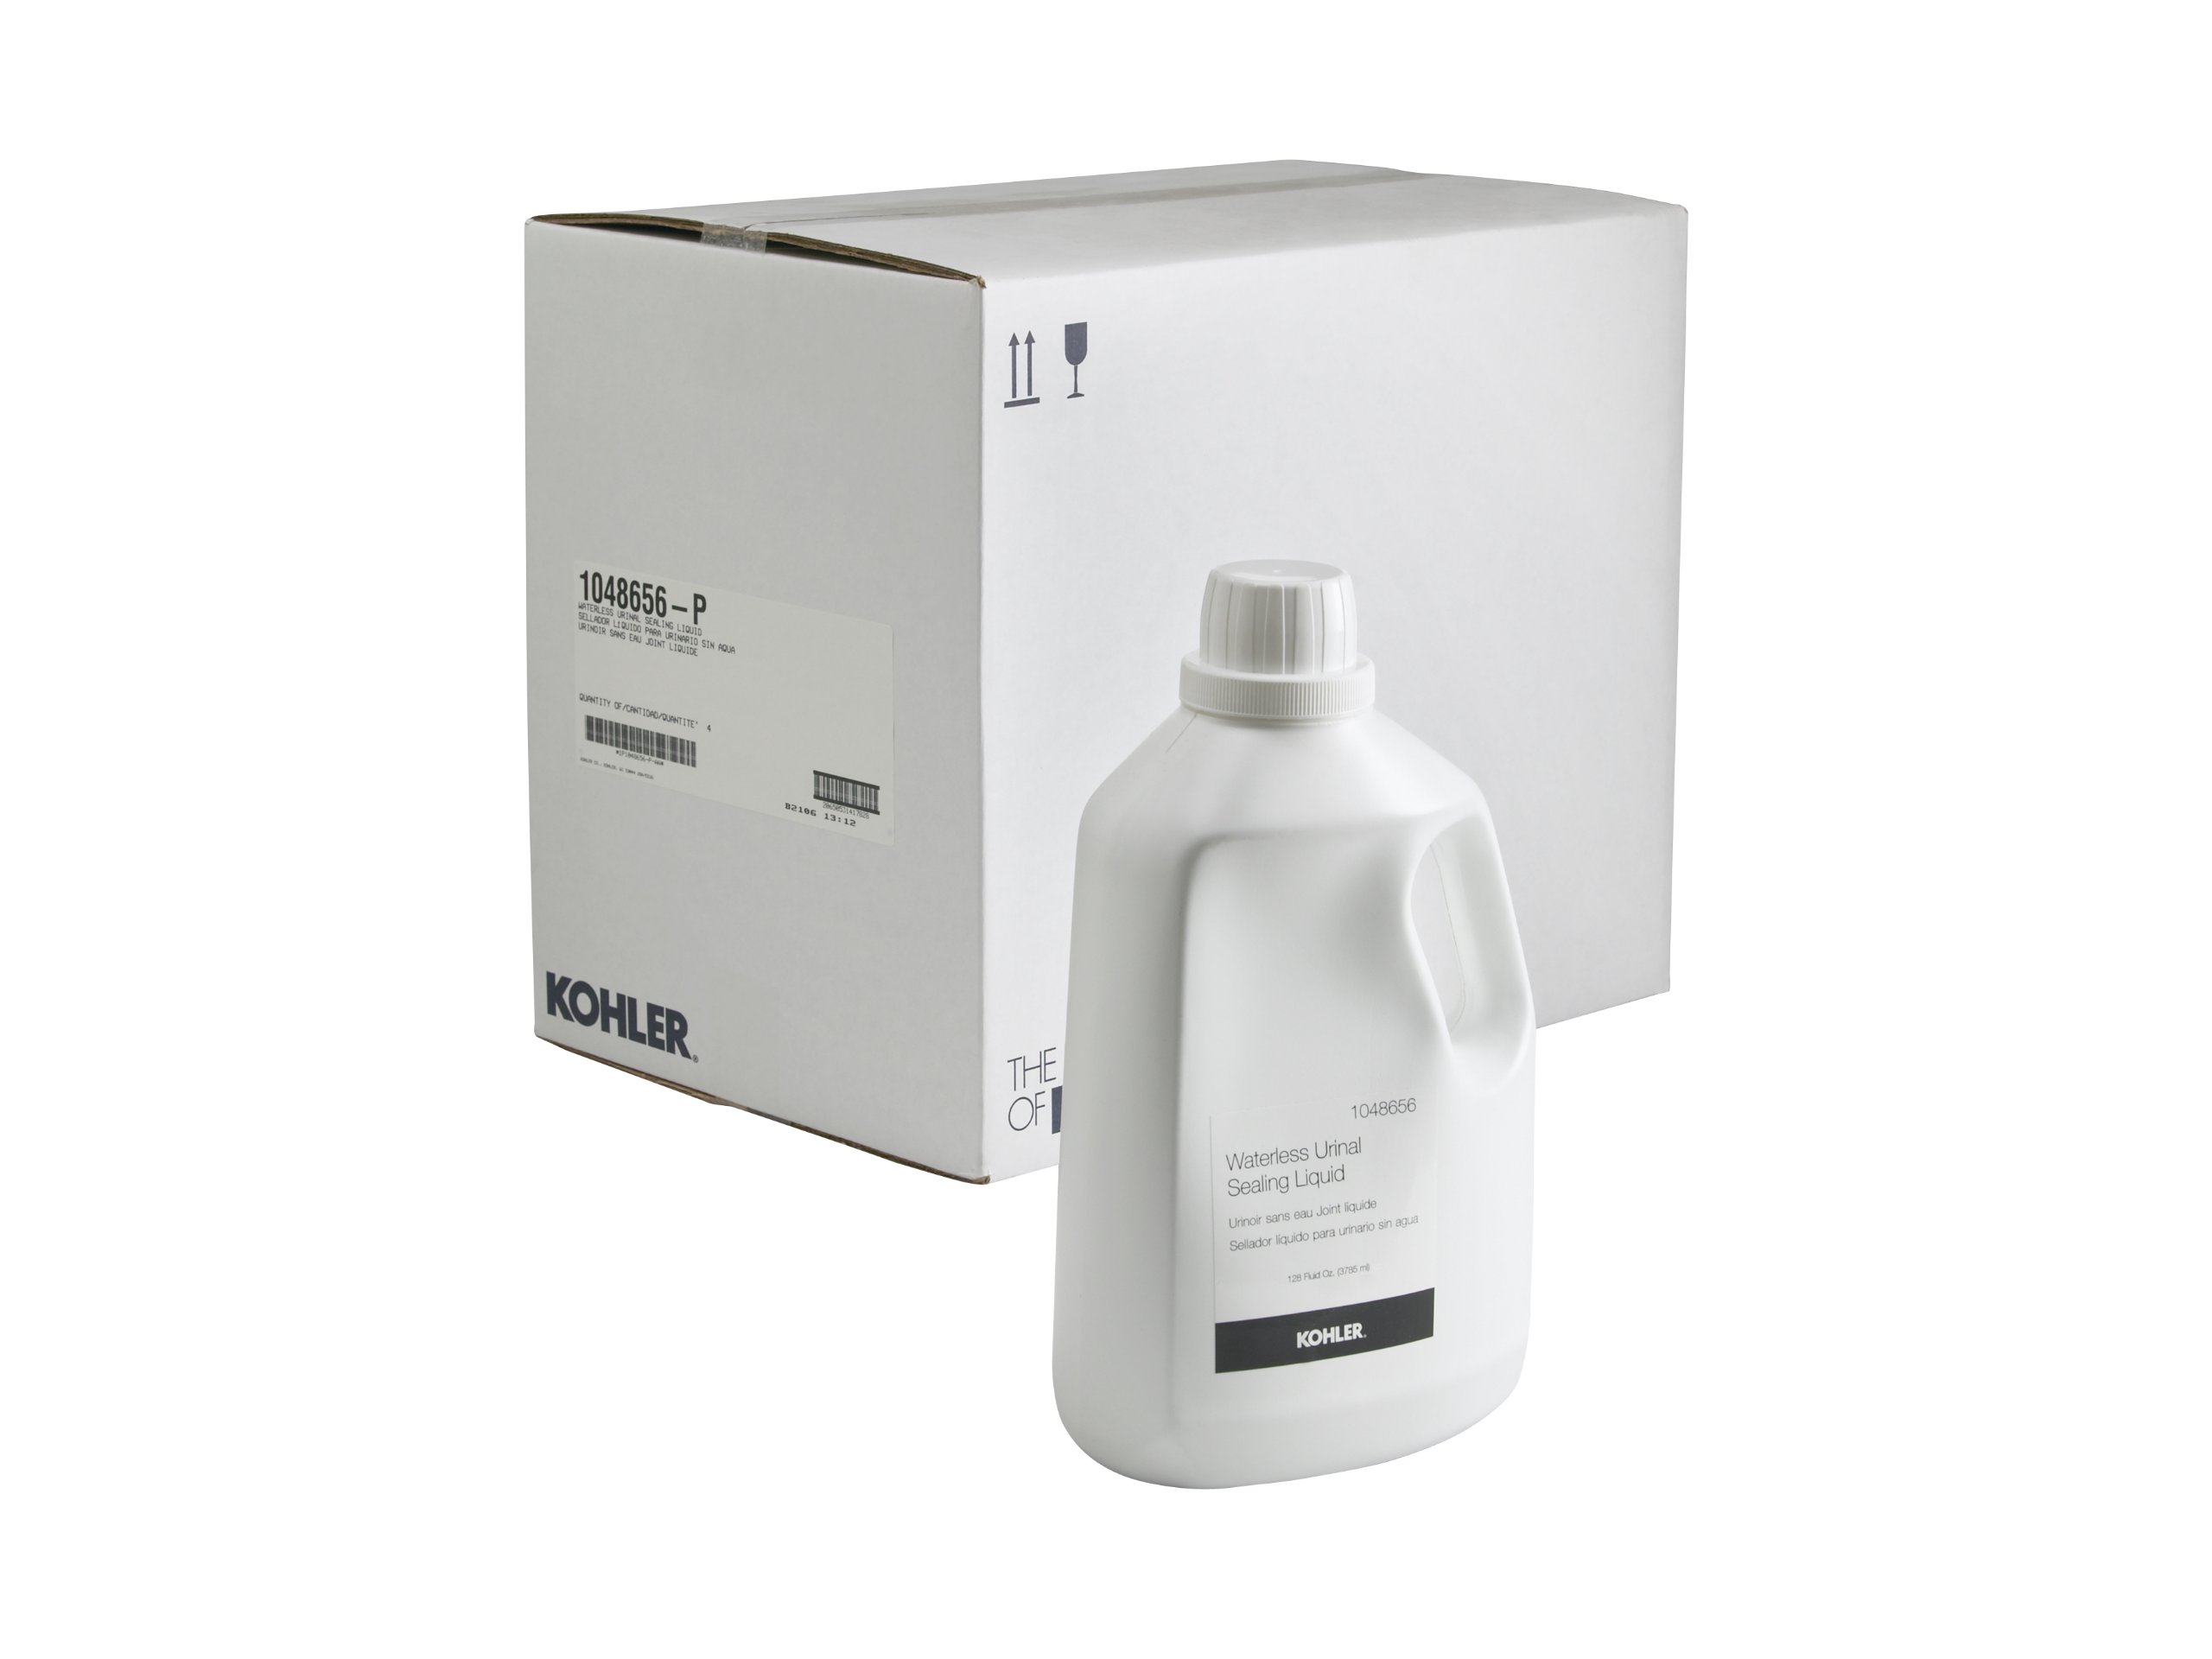 Kohler-K-1048656-P Waterless Urinal Sealing Liquid- Case